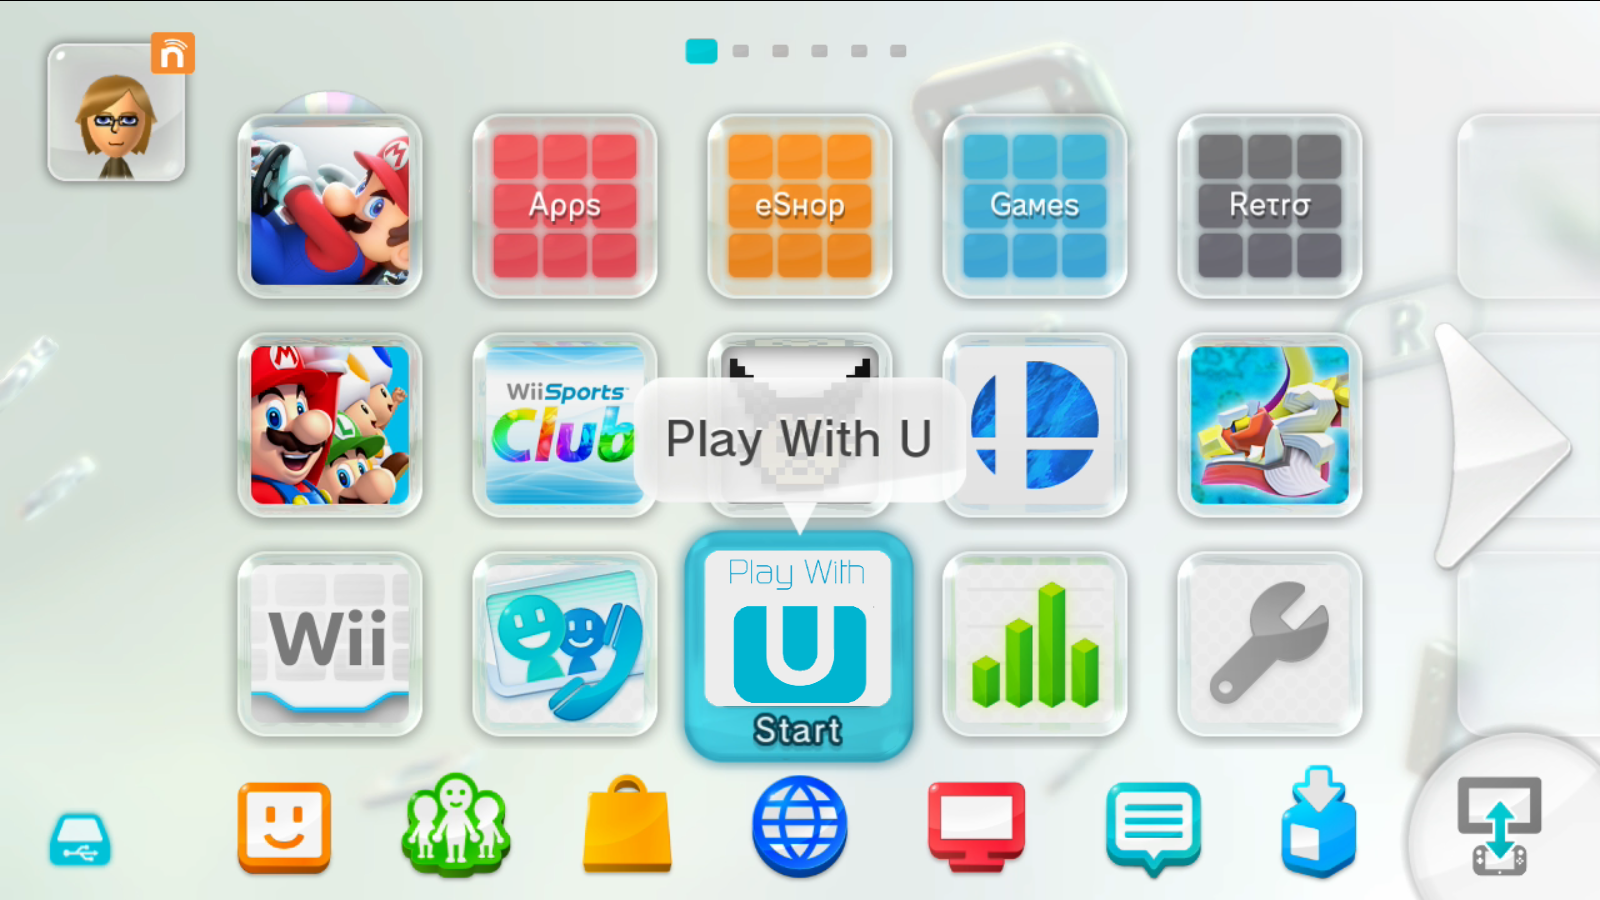 Wii U Menu.png